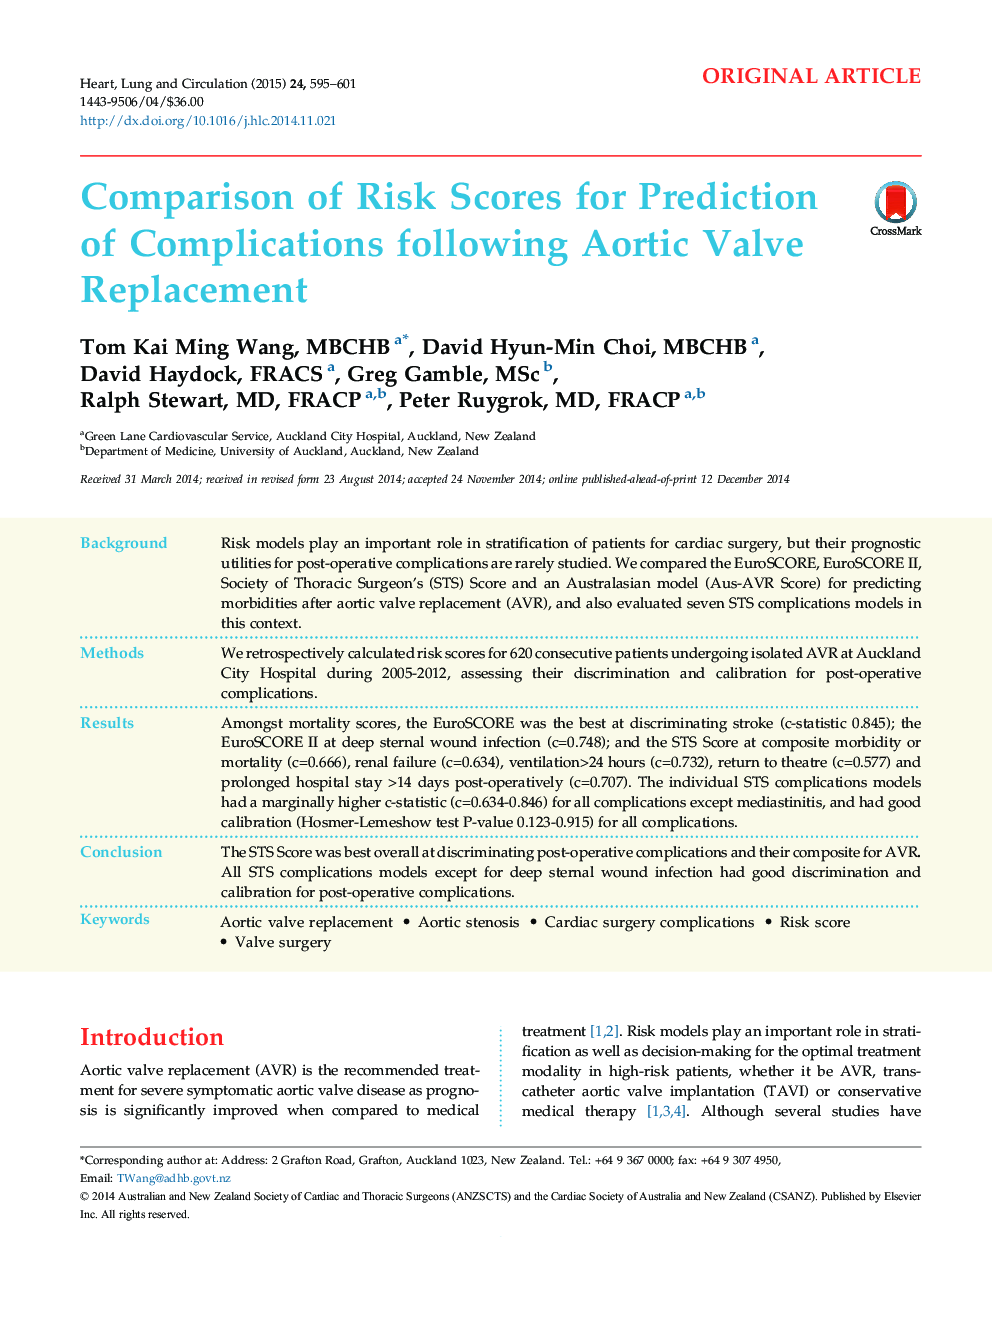 مقایسه نمرات ریسک برای پیش بینی عوارض پس از تعویض دریچه آئورت 